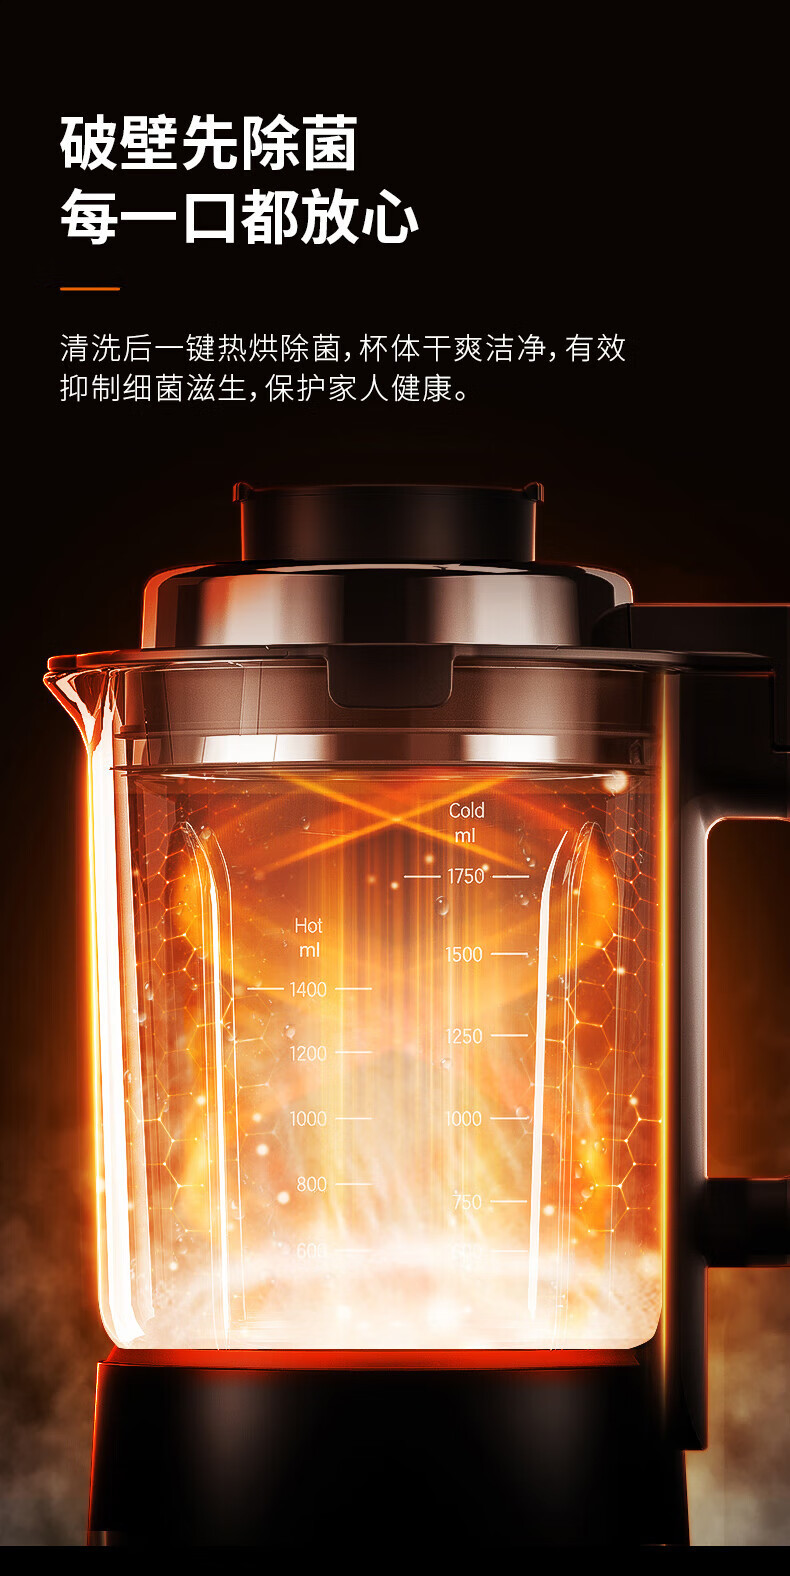 九阳/Joyoung 破壁机家用低音预约加热豆浆机料理机